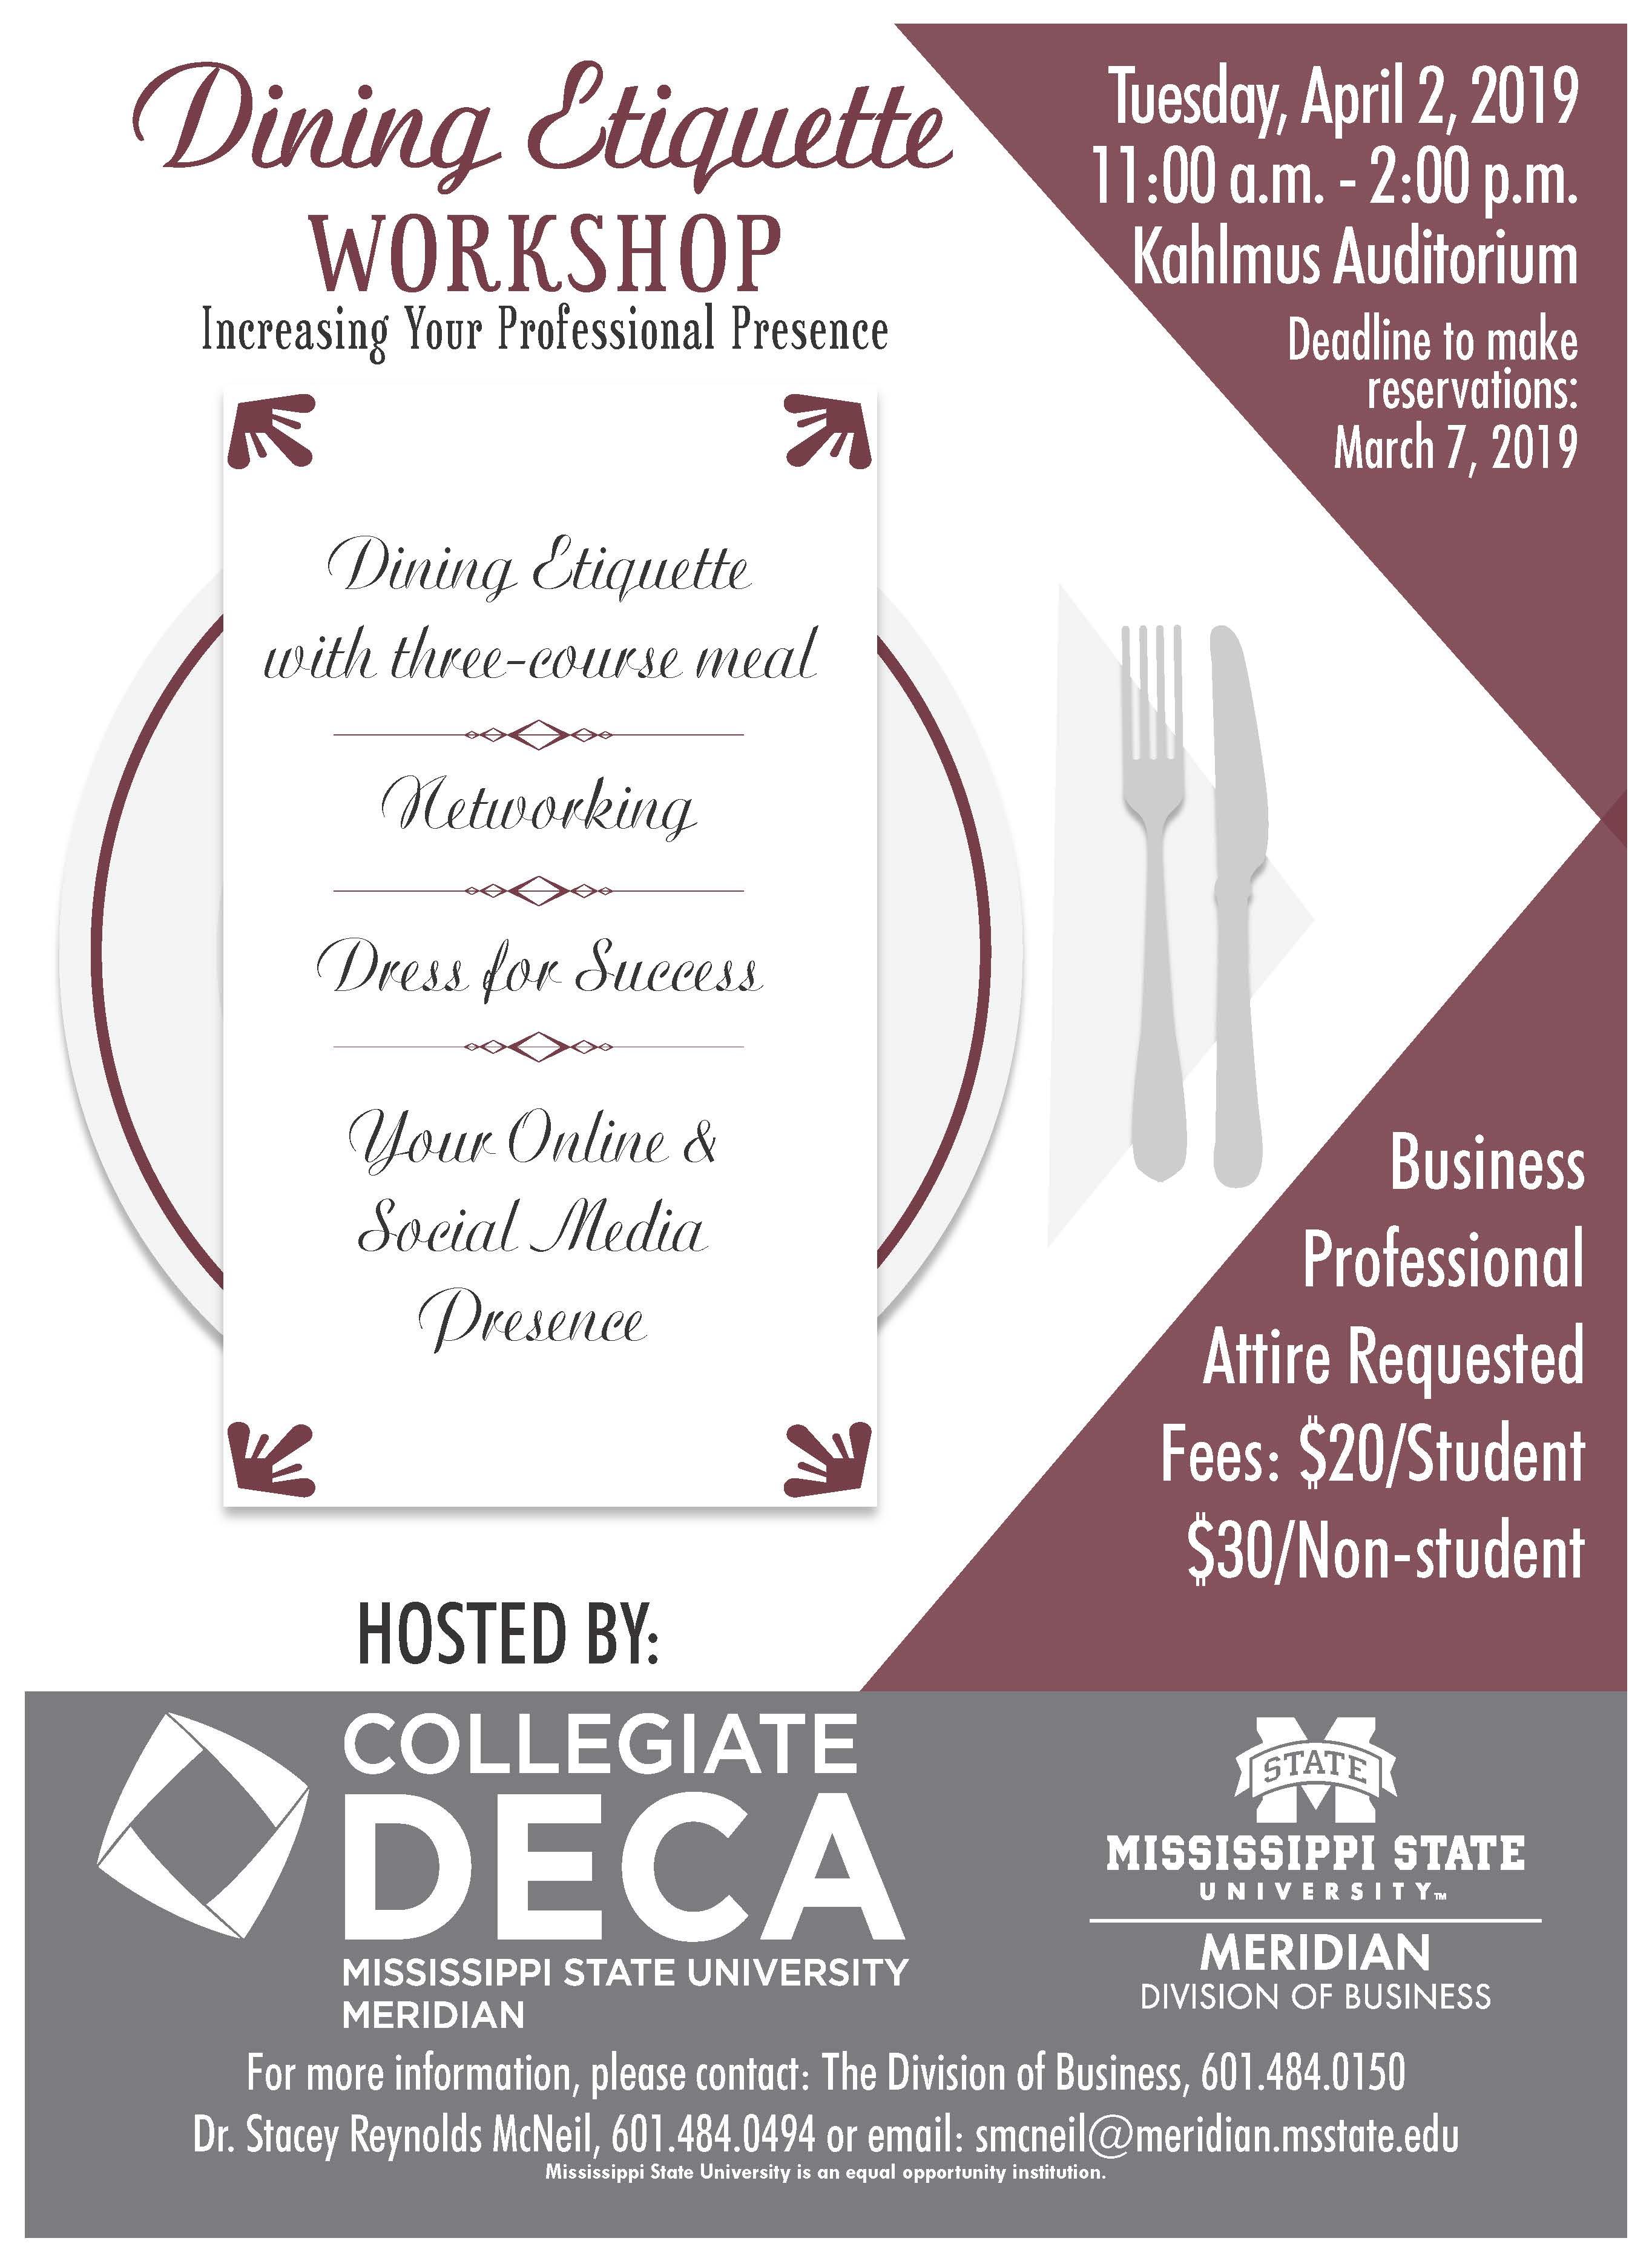 Dining Etiquette Workshop to be held at MSU-Meridian